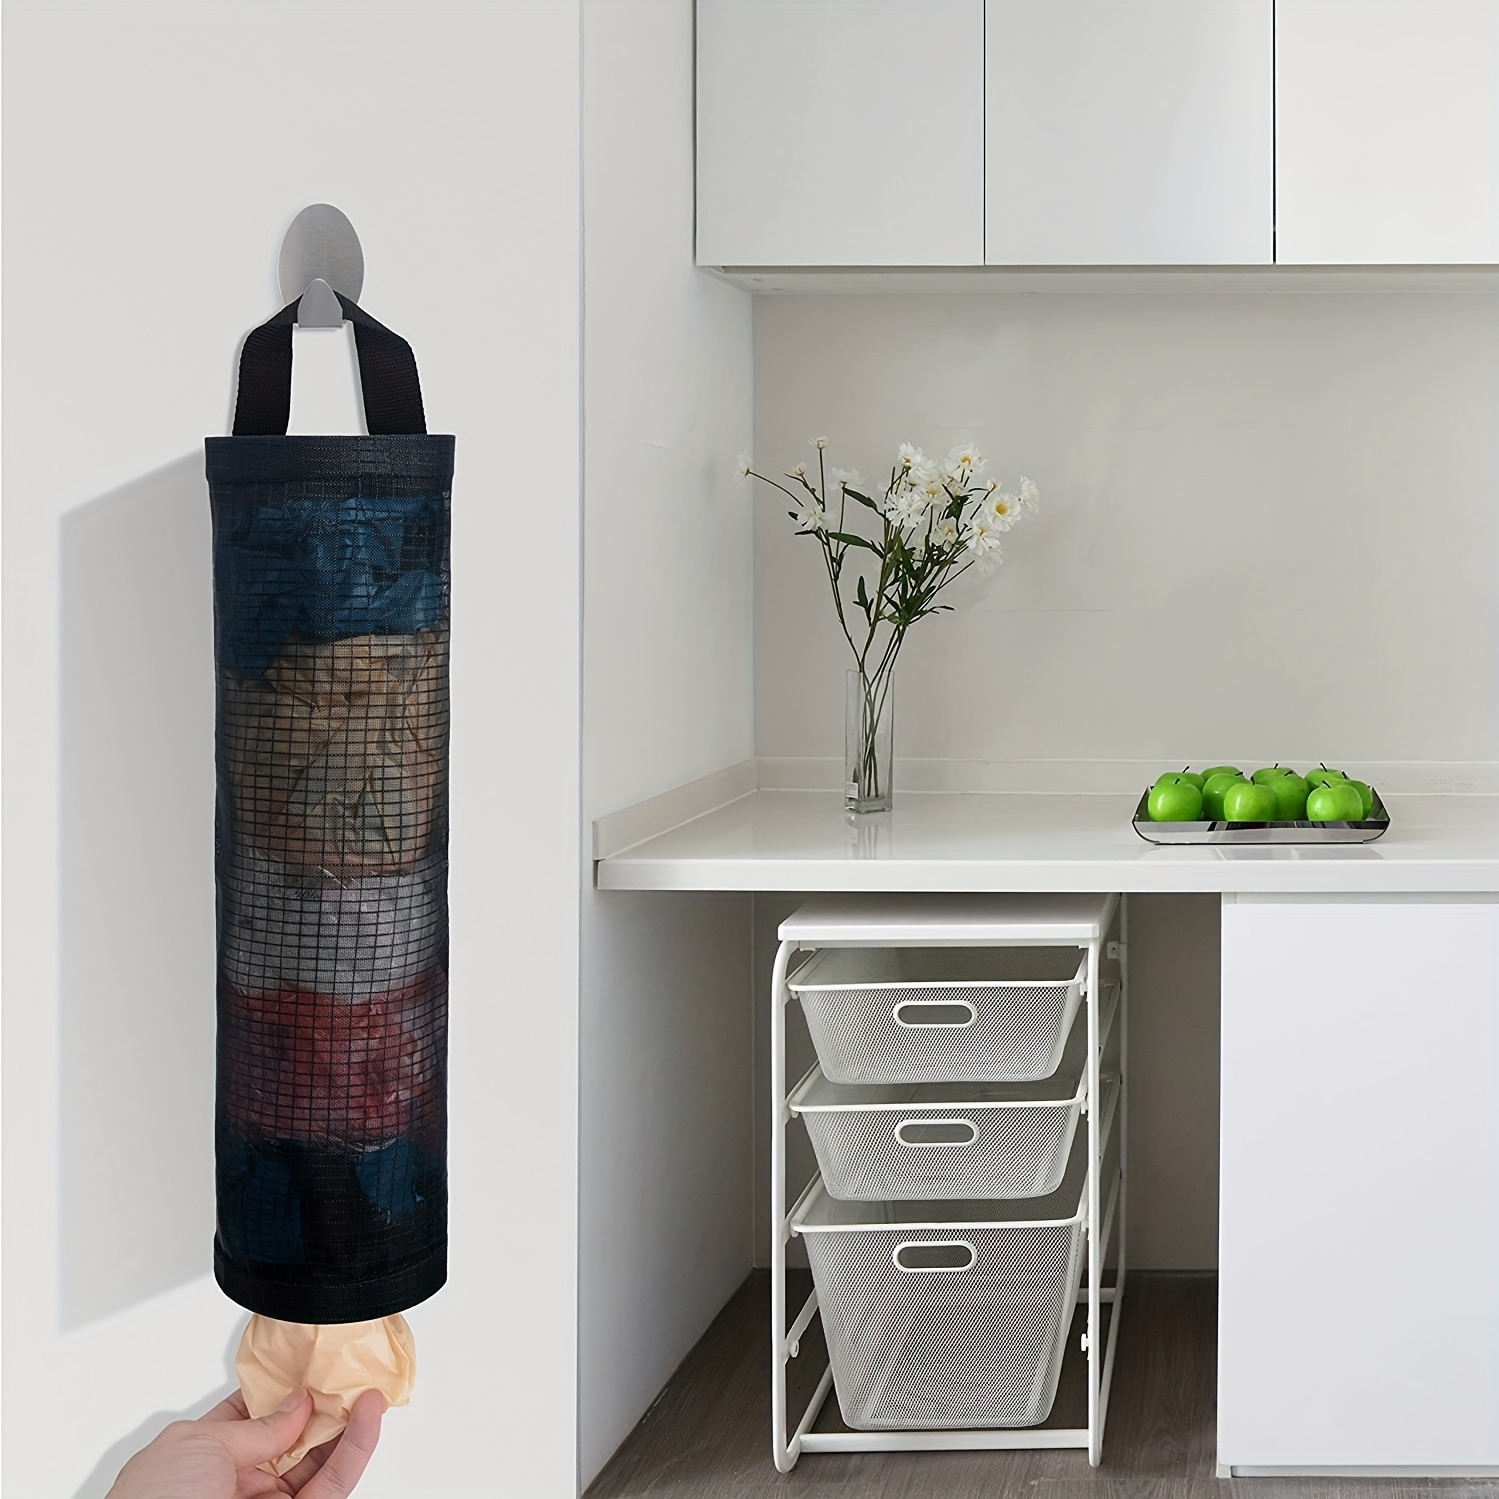 PIPETPET Plastic Bag Holder, Grocery Bag Holder Mesh Hanging Storage Bag  Dispenser (Black 2 Packs) 